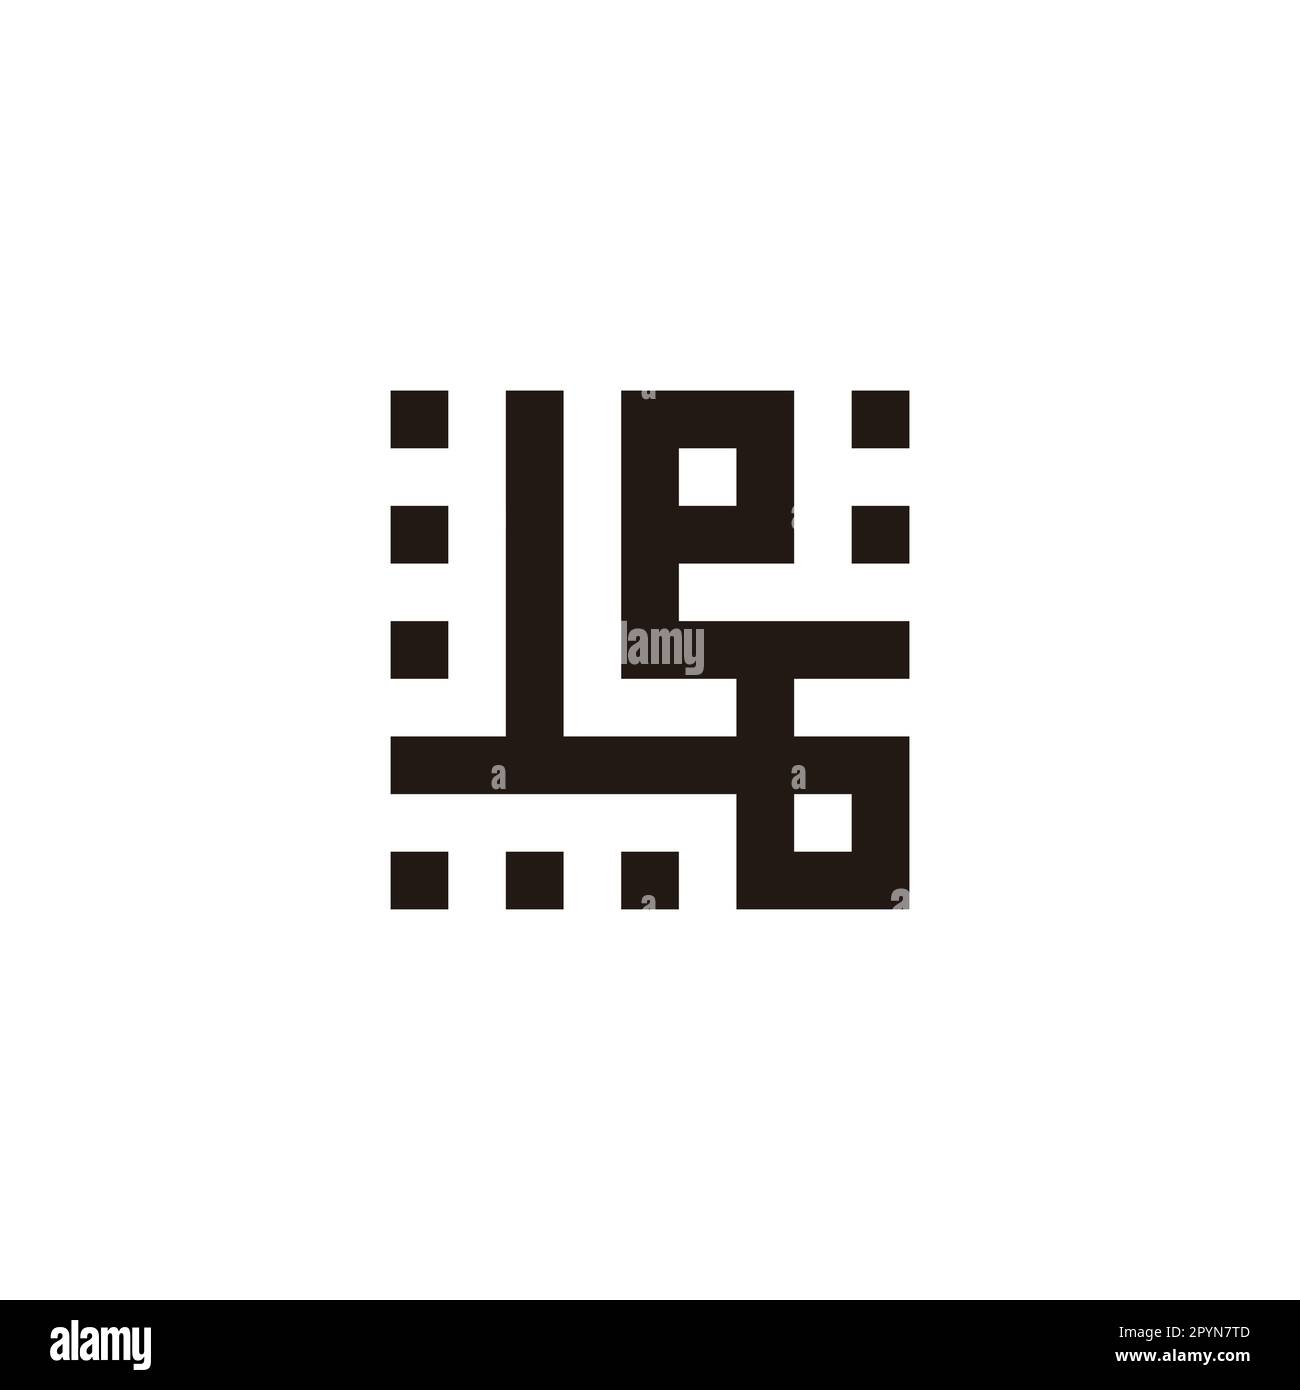 Share 156+ muhammed logo super hot